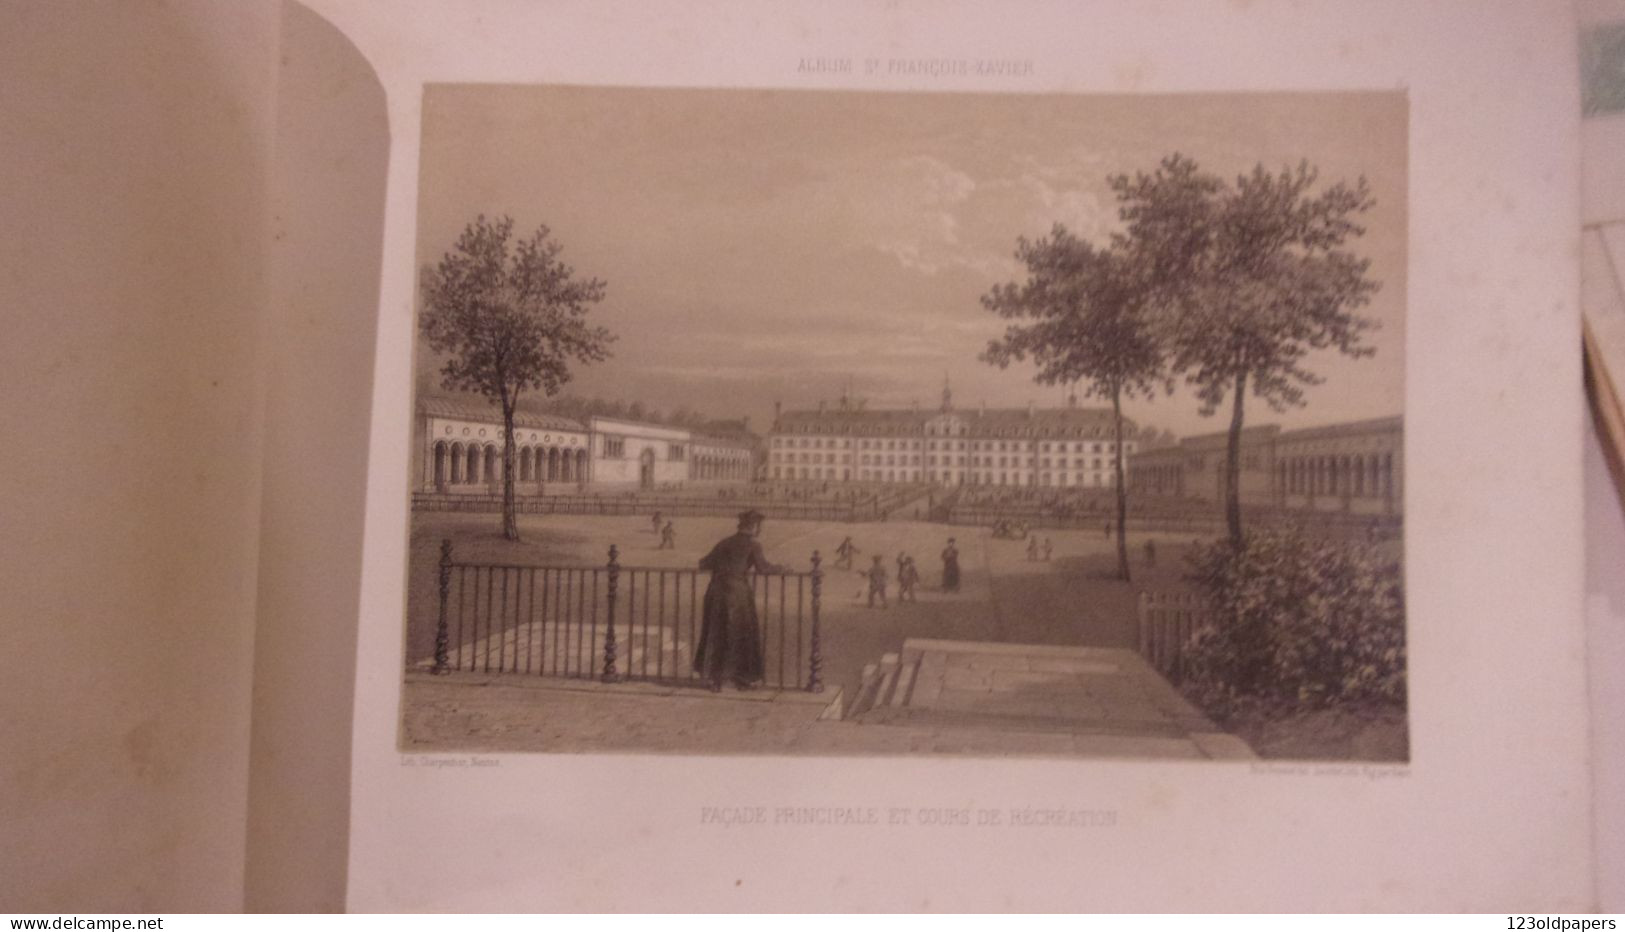 VANNES RARE ALBUM DE 6 LITHOGRAPHIES 1865 CHARPENTIER ECOLE LIBRE ST FRANCOIS XAVIER DESSINE PAR FELIX BENOIST - 1801-1900